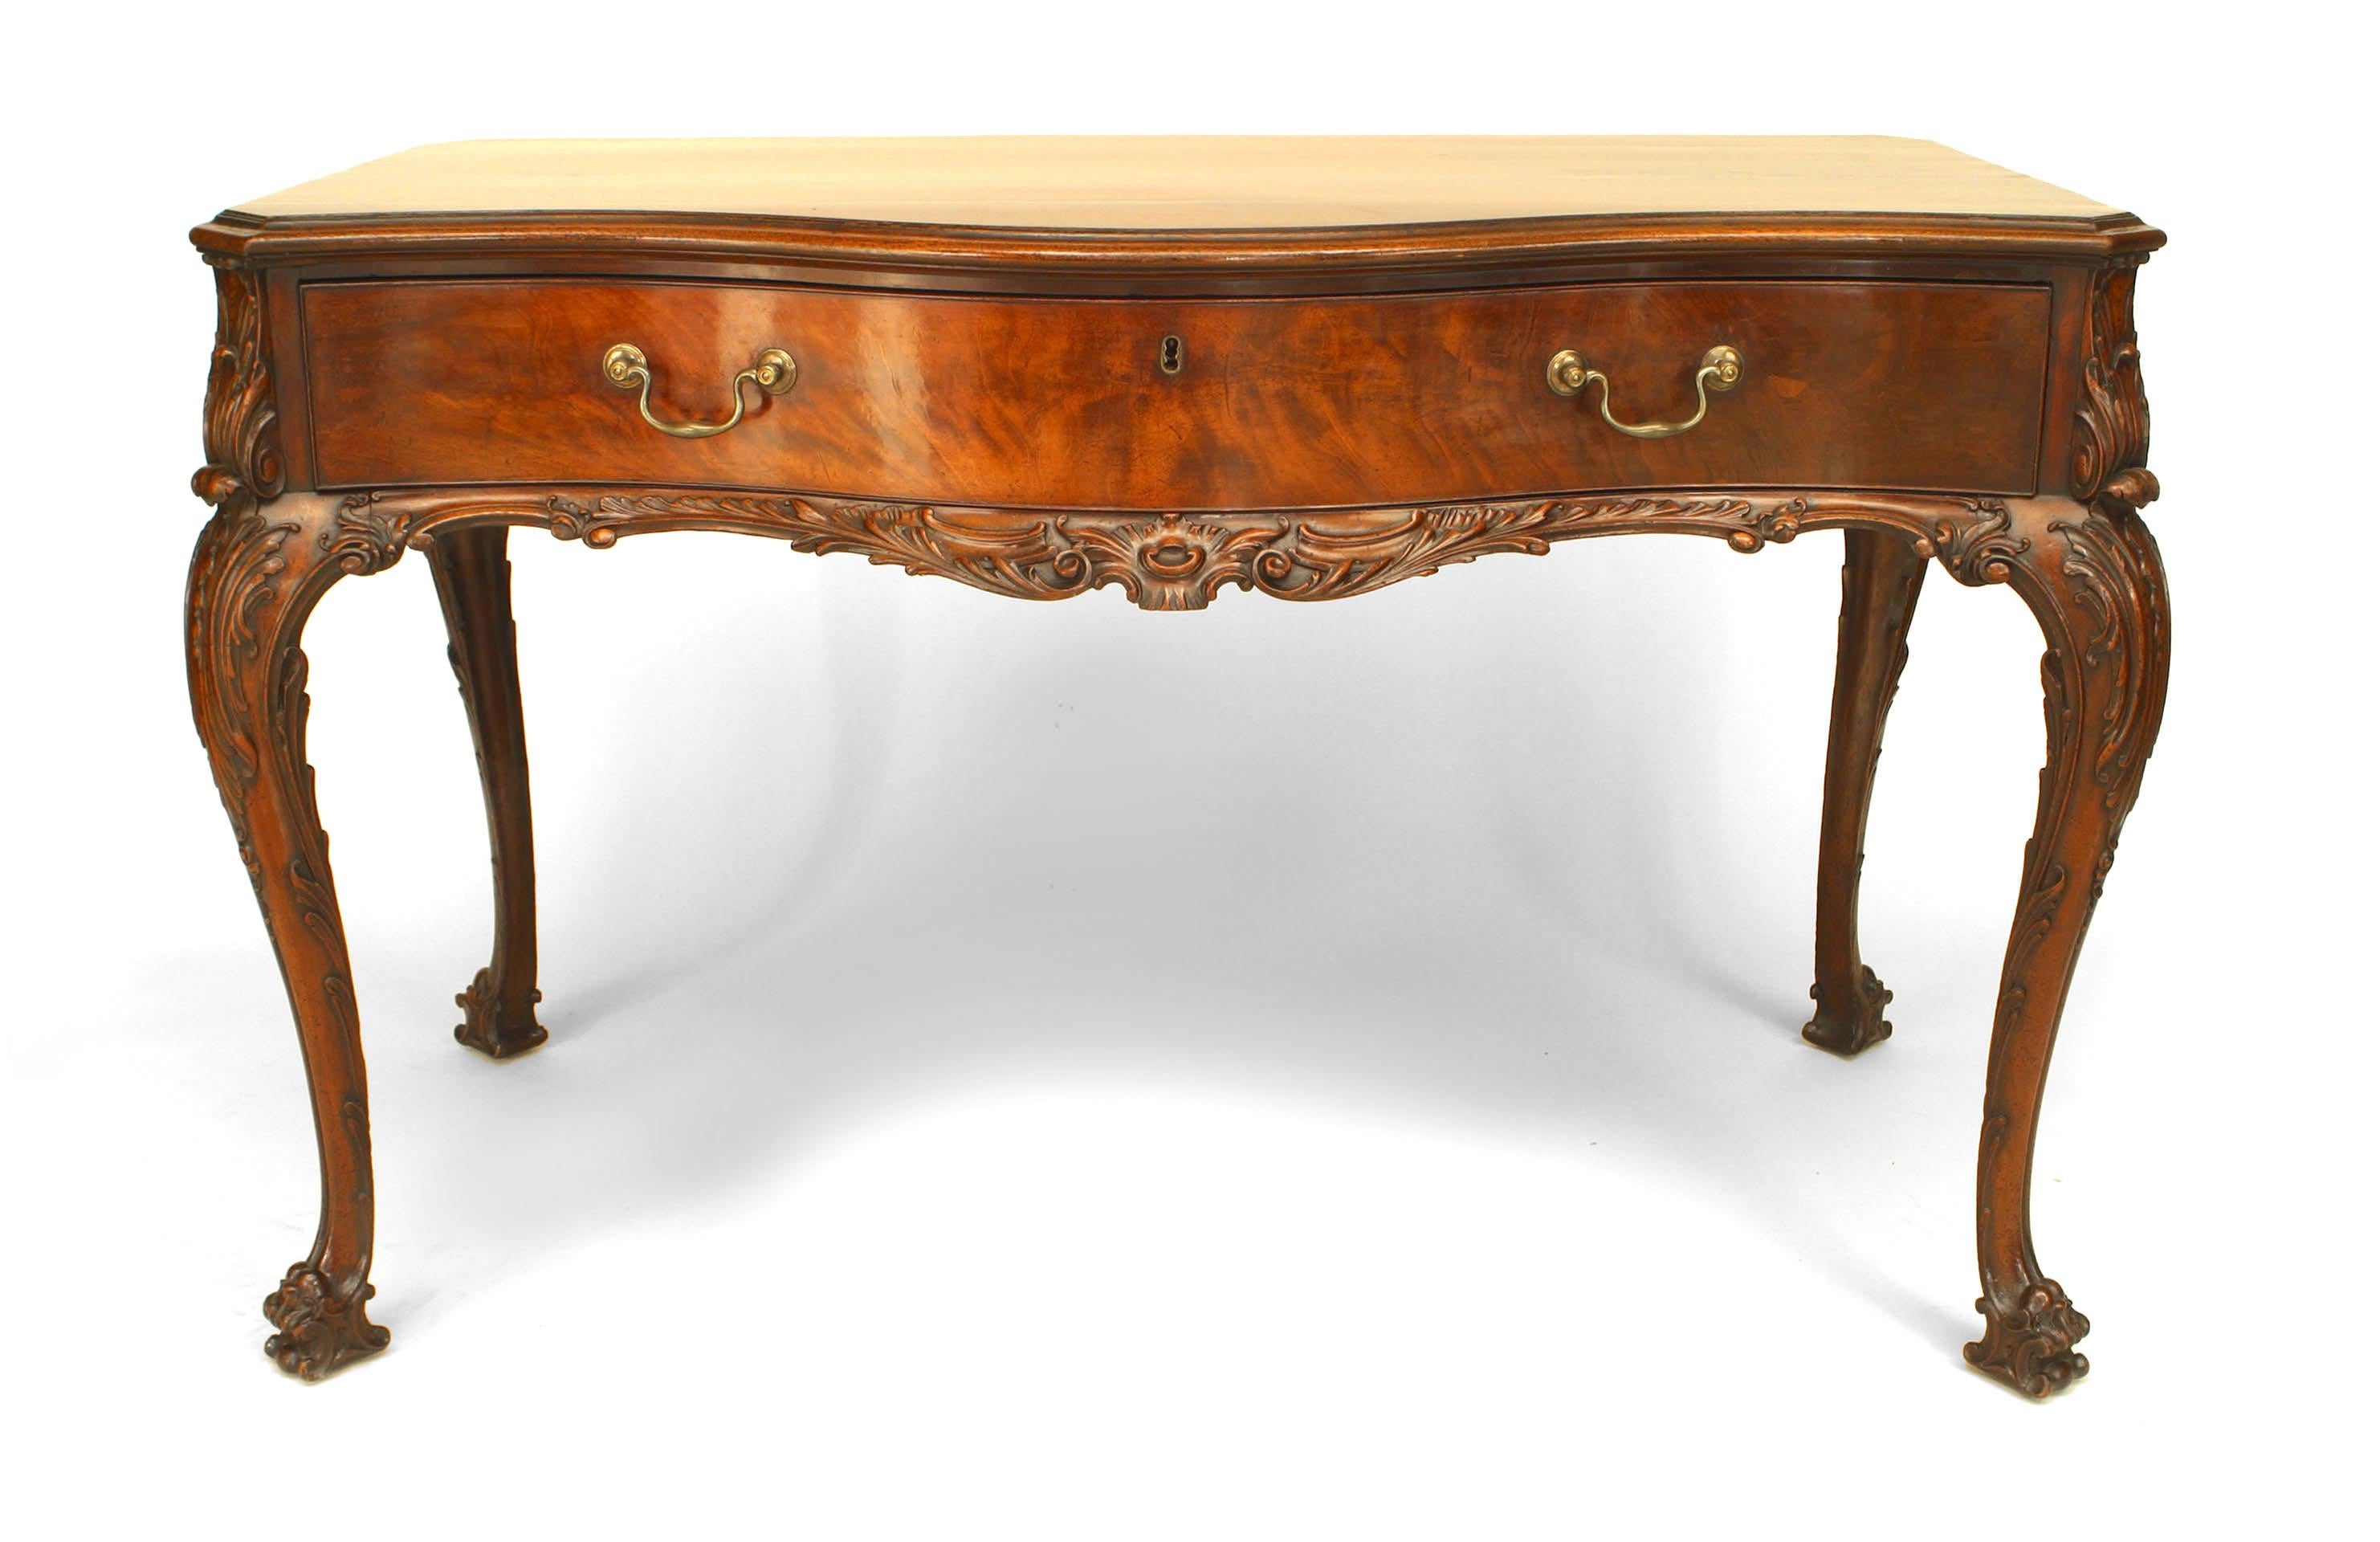 Englischer Mahagoni-Schreibtisch im Chippendale-Stil des 18. bis 19. Jahrhunderts mit schlangenförmiger Front und einer Schublade mit verschiebbarer Lederplatte, die auf geschnitzten Cabriole-Beinen ruht.